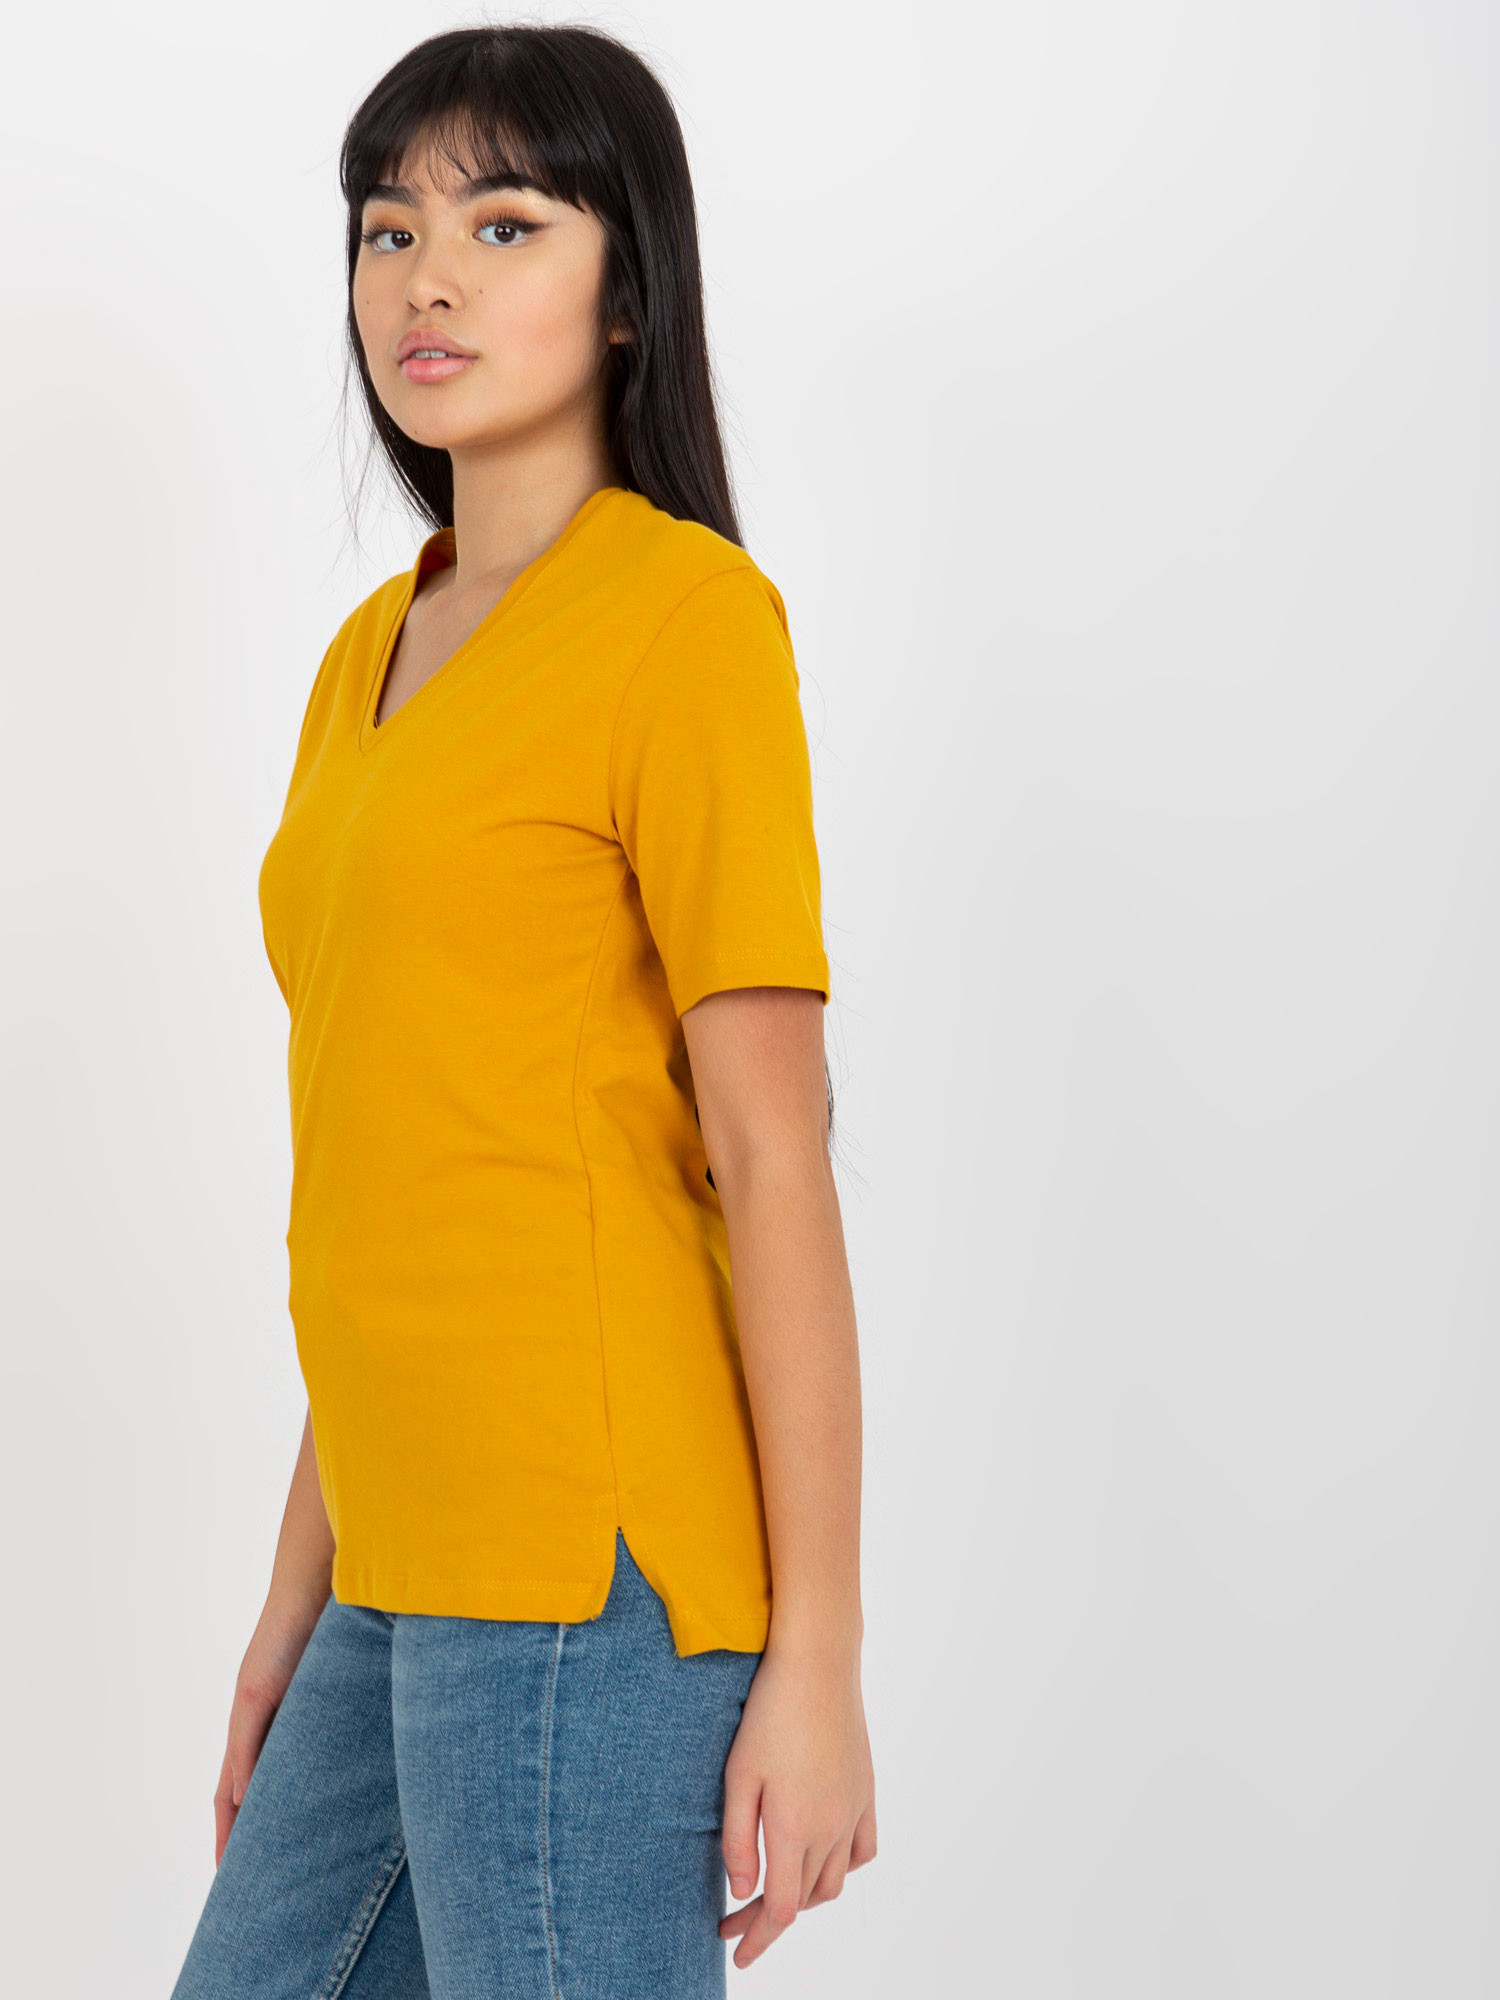 Dámské tričko EM TS HS 20 25.41X tmavě žlutá - FPrice S